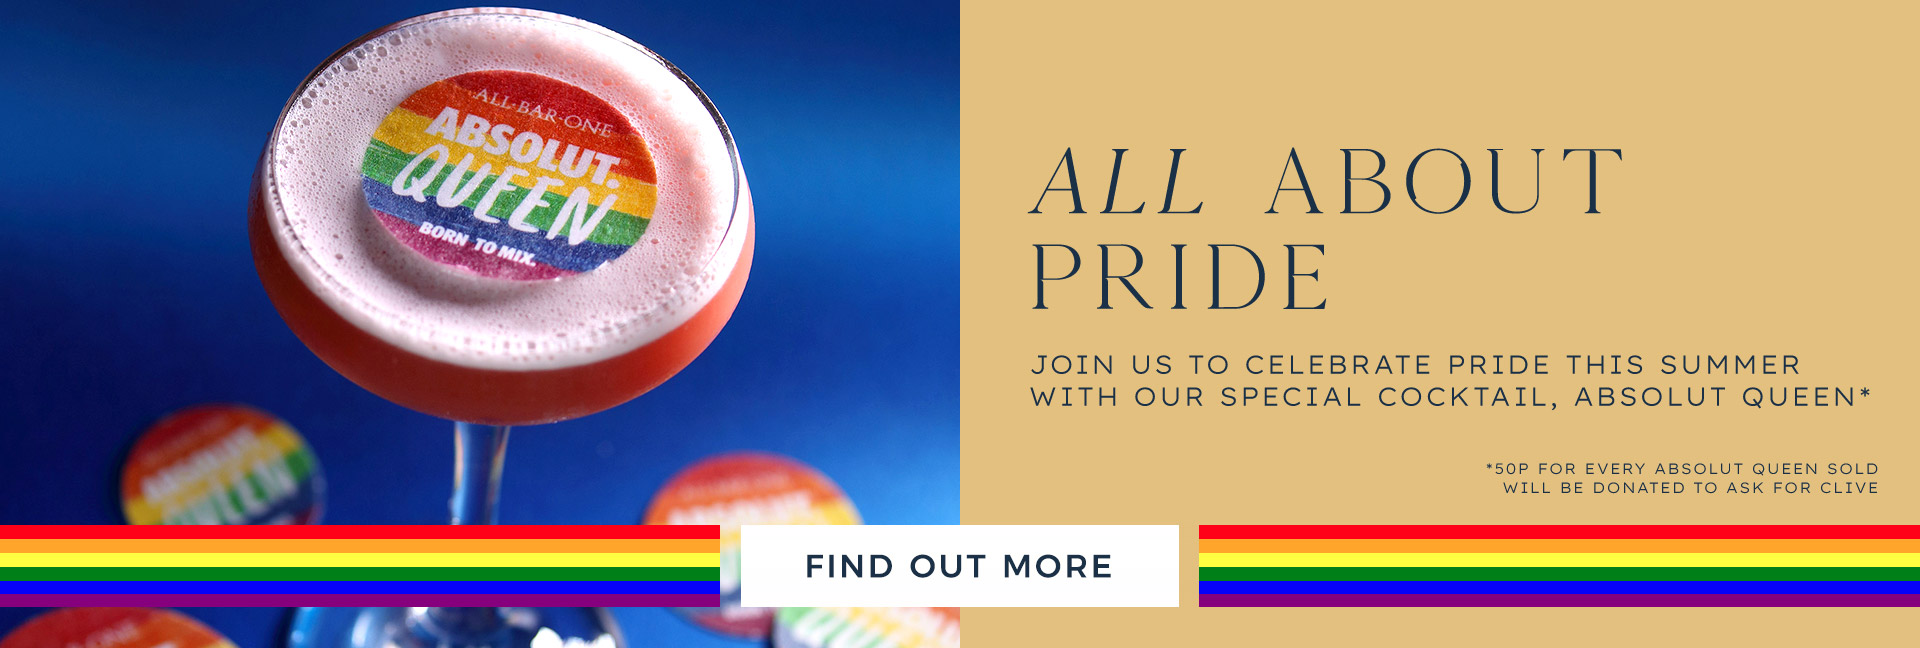 abo-pride-banner.jpg